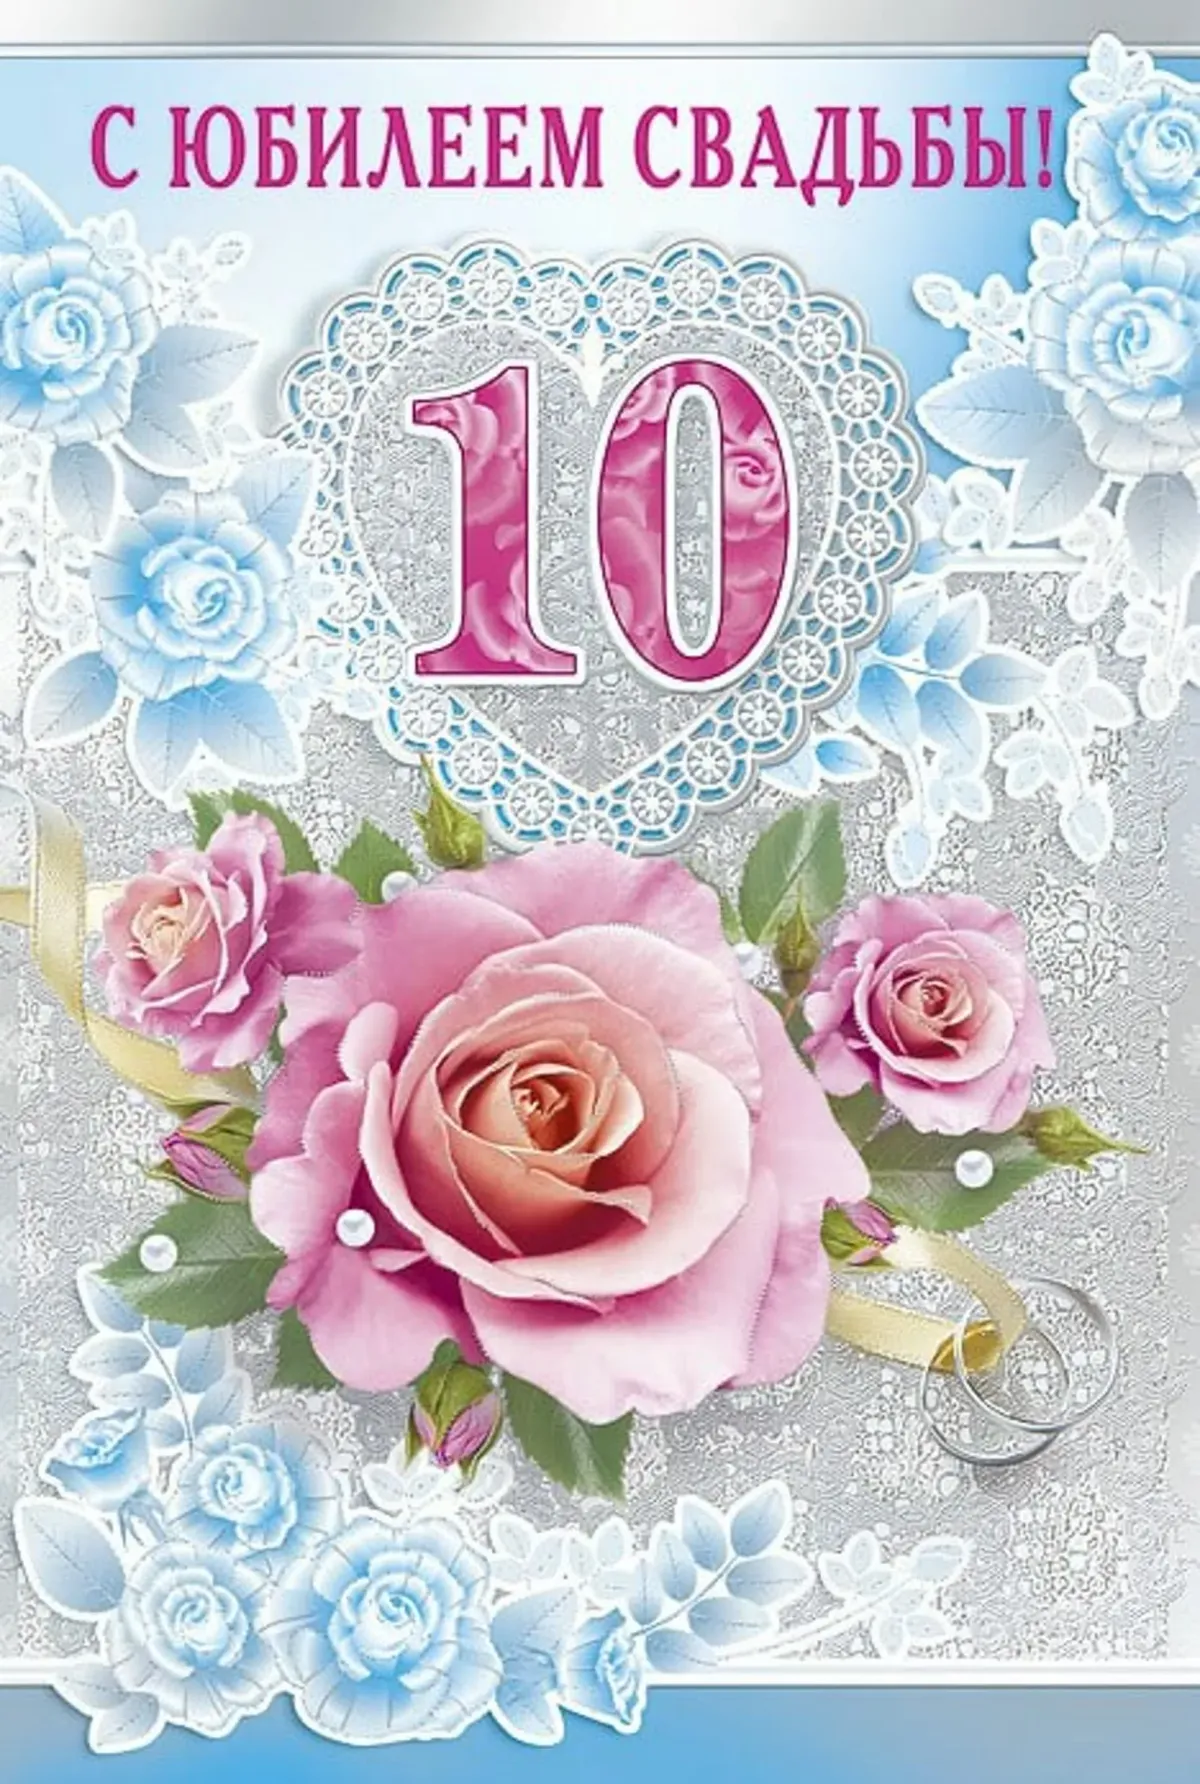 Будет свадьба 10 лет. 10 Лет свадьбы. 10 Лет свадьбы поздравления. С юбилеем свадьбы 10 лет. Розовая свадьба.